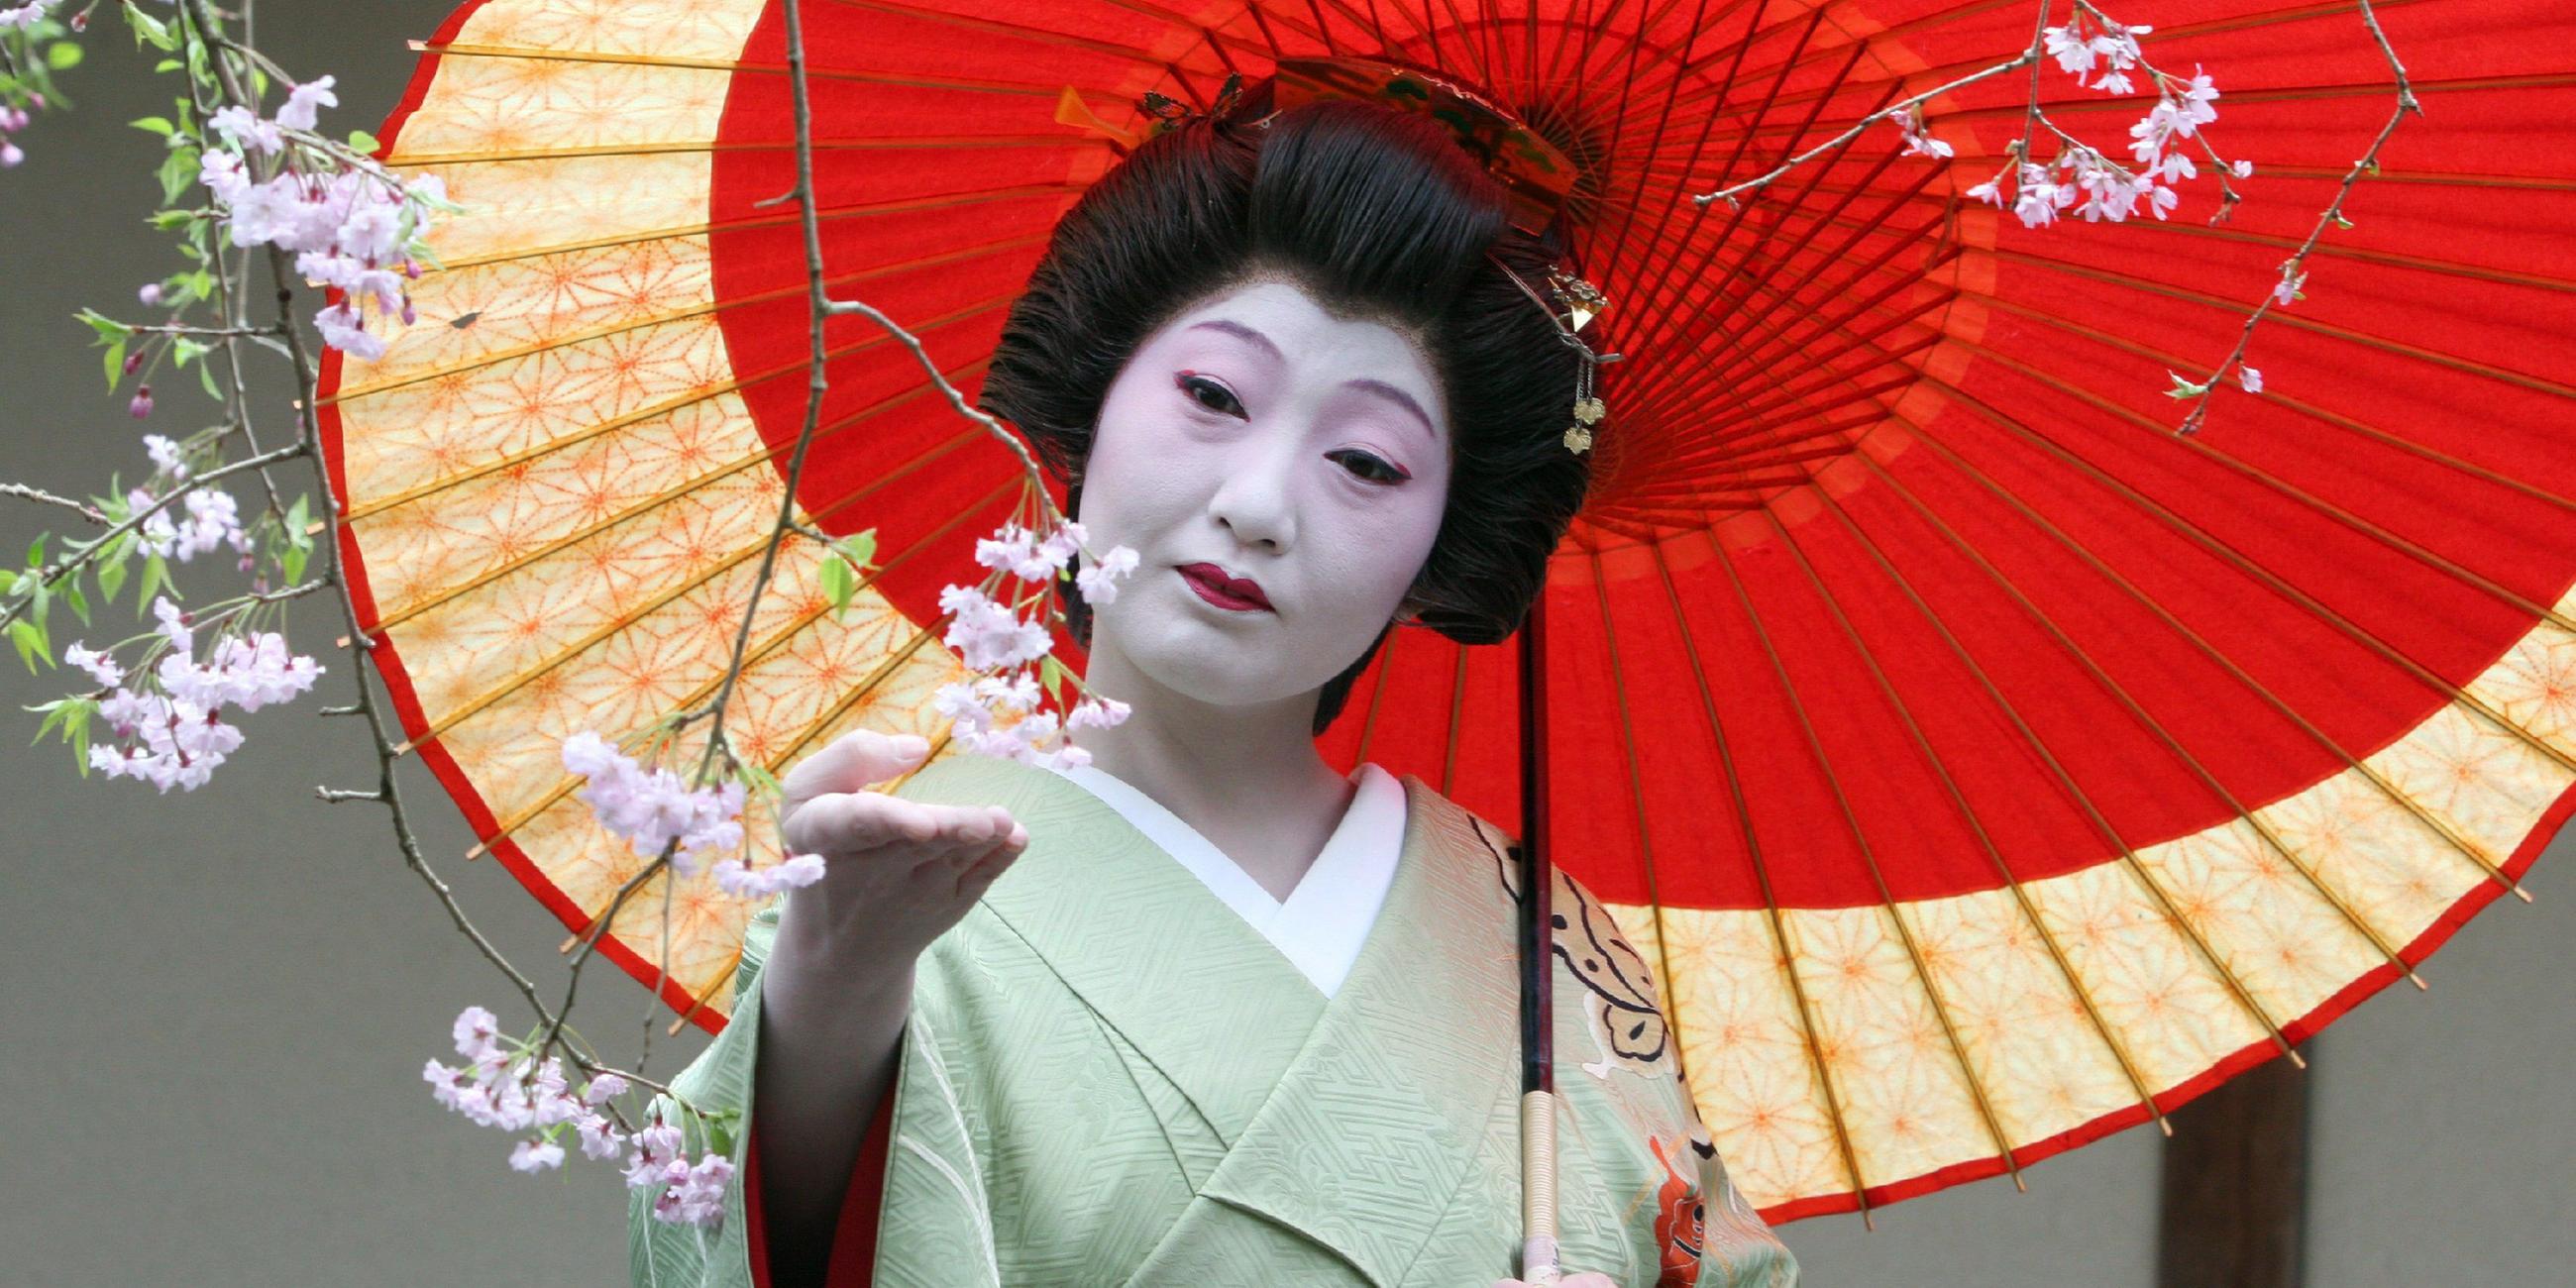 Eine japanische Geisha betrachtet den Ast eines japanischen Kirschbaums. Sie hält einen dekorativen, roten Regenschirm.